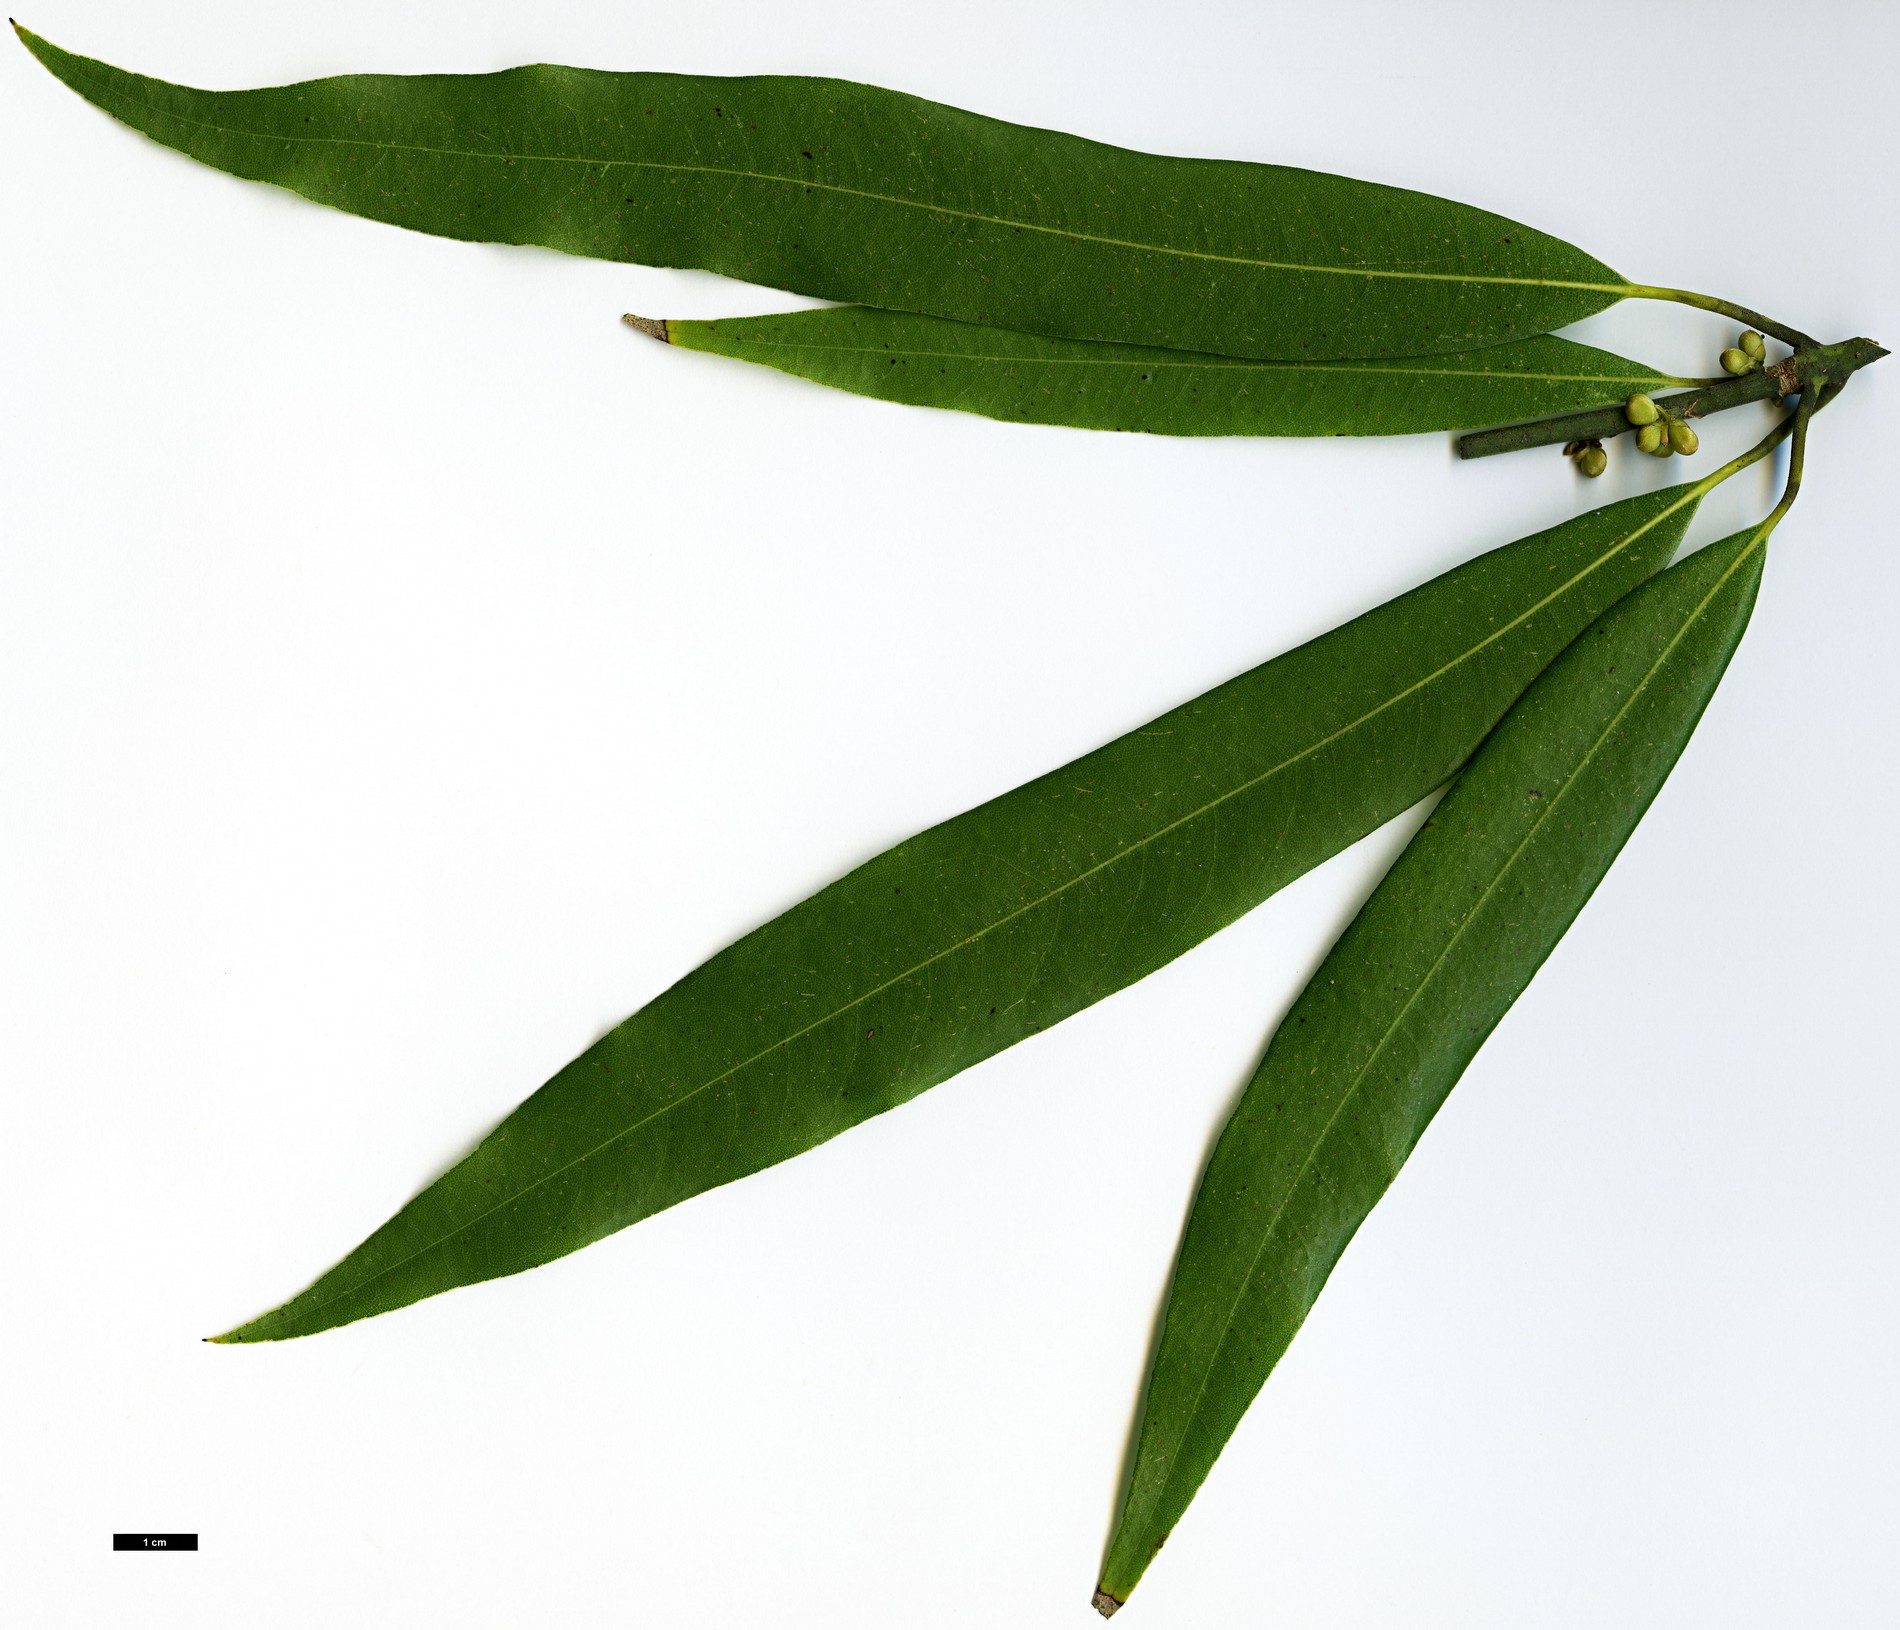 High resolution image: Family: Lauraceae - Genus: Machilus - Taxon: multinervia